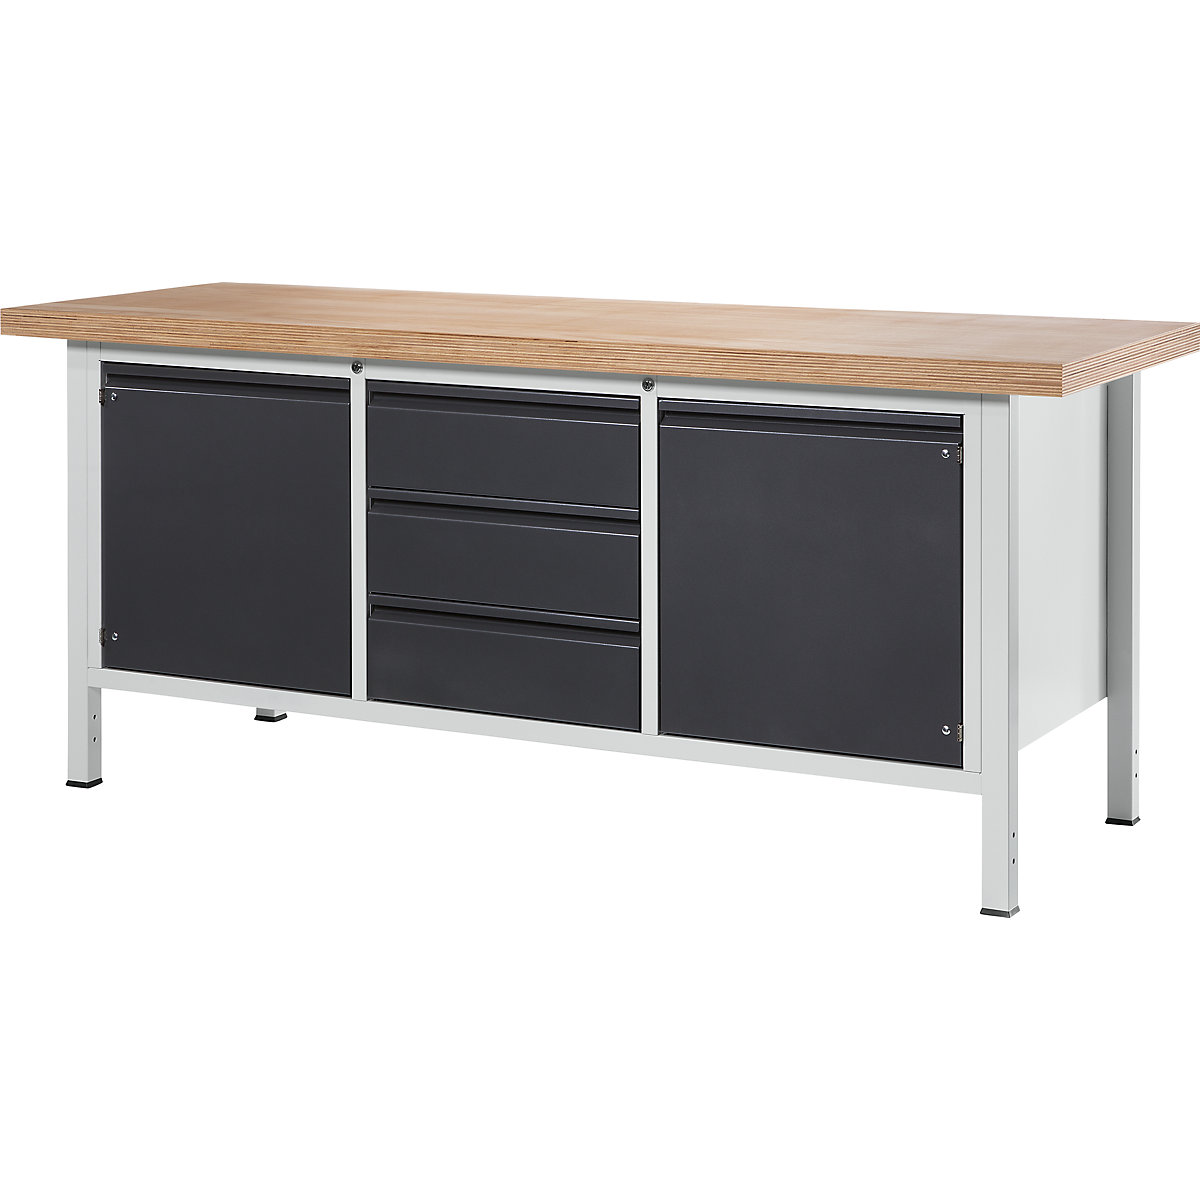 Dílenský stůl s rámovou konstrukcí – RAU, 3 zásuvky, 2 dveře, šířka desky 2000 mm, antracitová metalíza-7